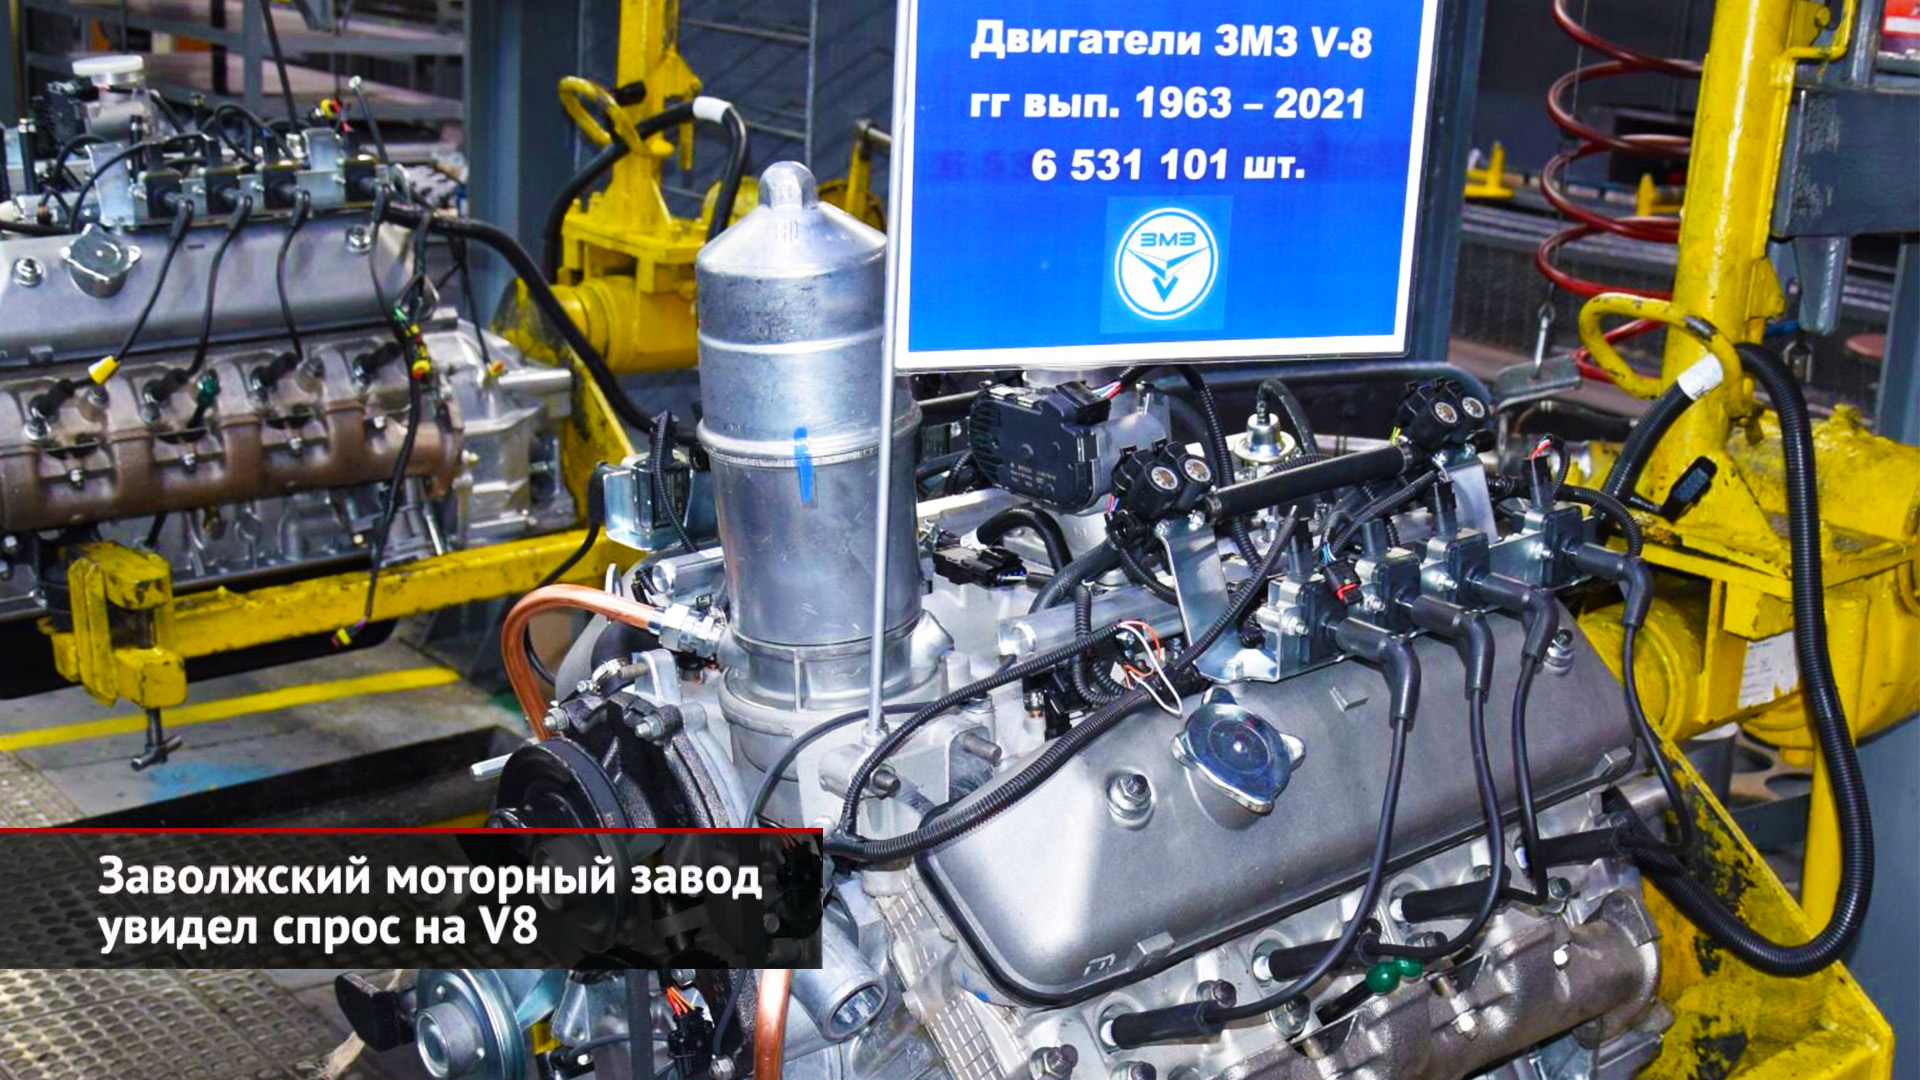 Тутаевский моторный завод готов расширяться | Заволжский моторный завод увидел спрос на V8 | НК 2328